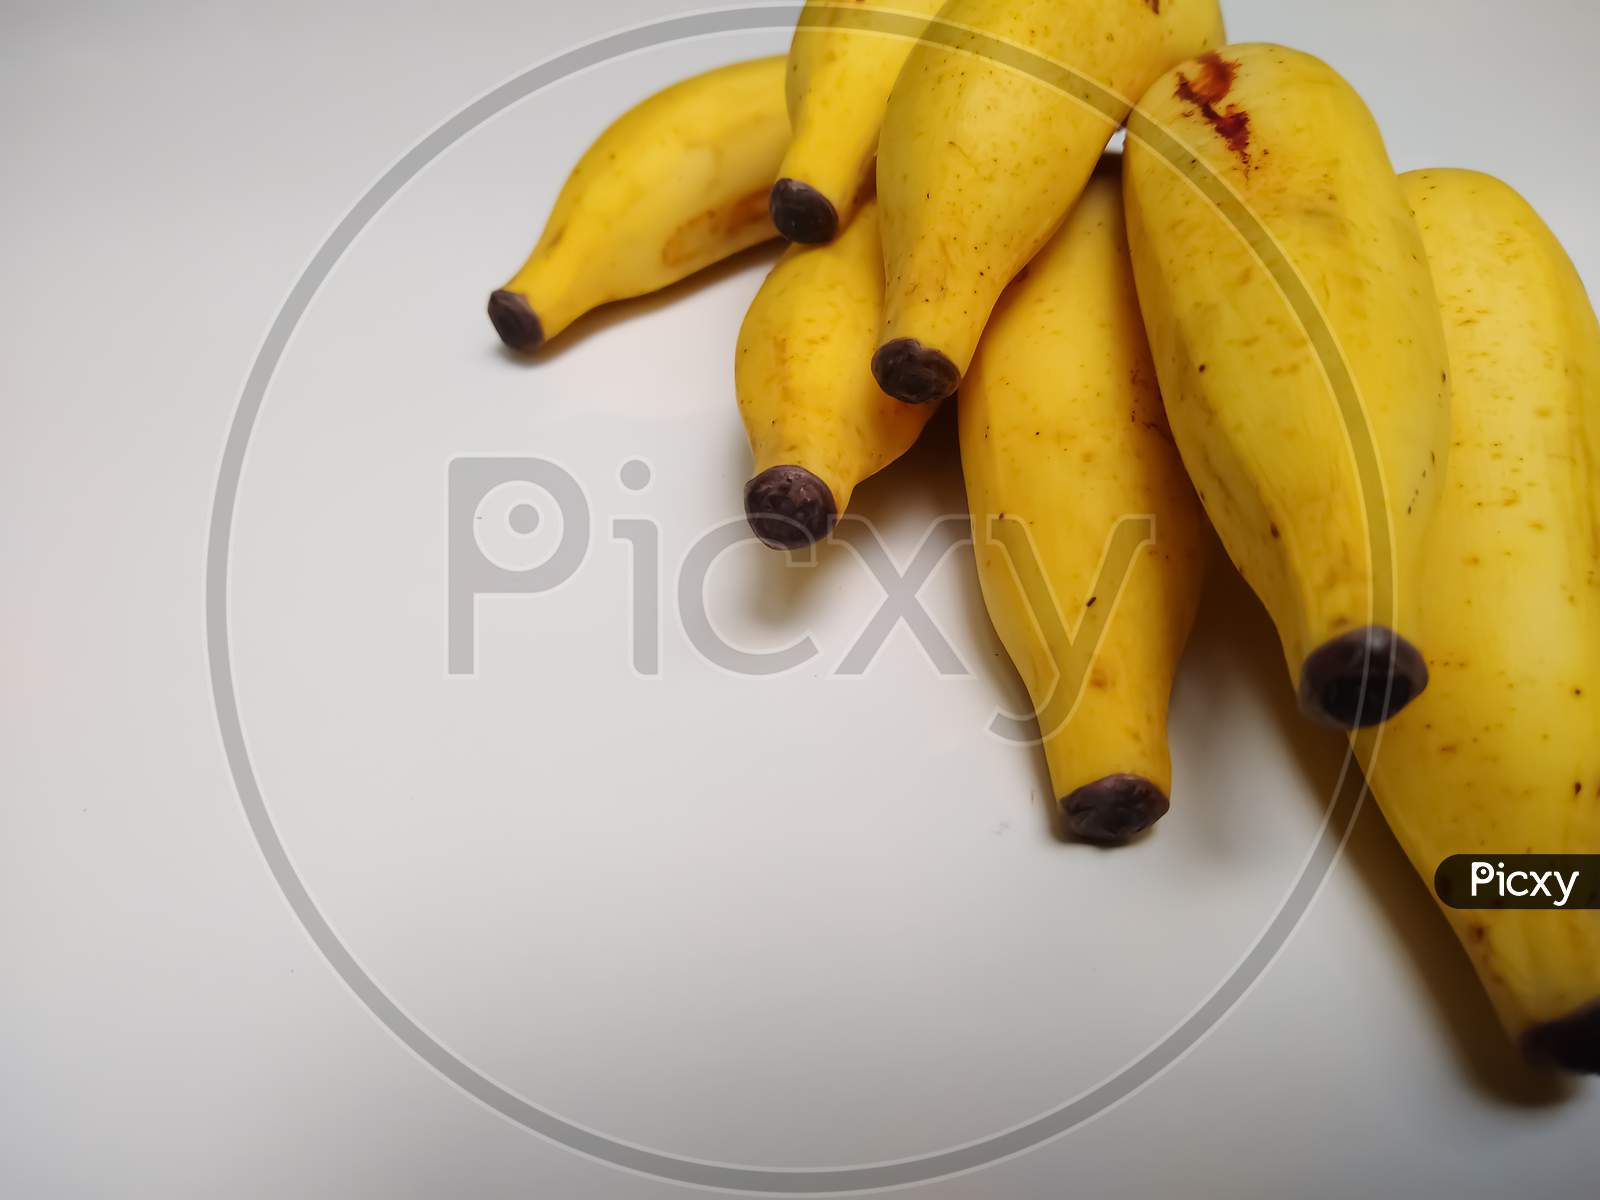 Ripened banana on white background